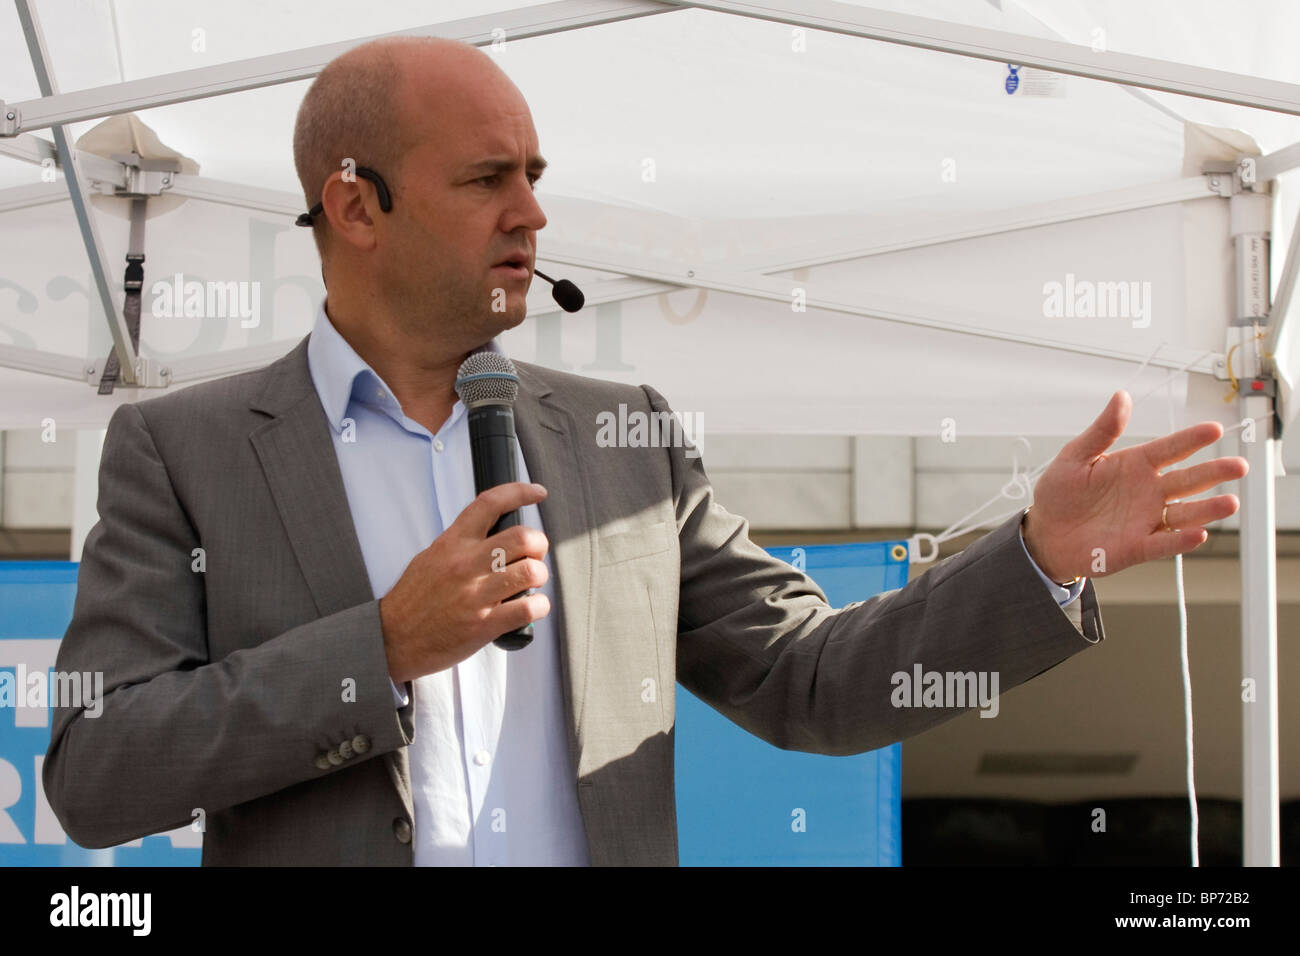 Fredrik Reinfeldt, schwedische Ministerpräsident, im Wahlkampf für die Moderaterna vor der schwedischen Wahl im September. Stockfoto